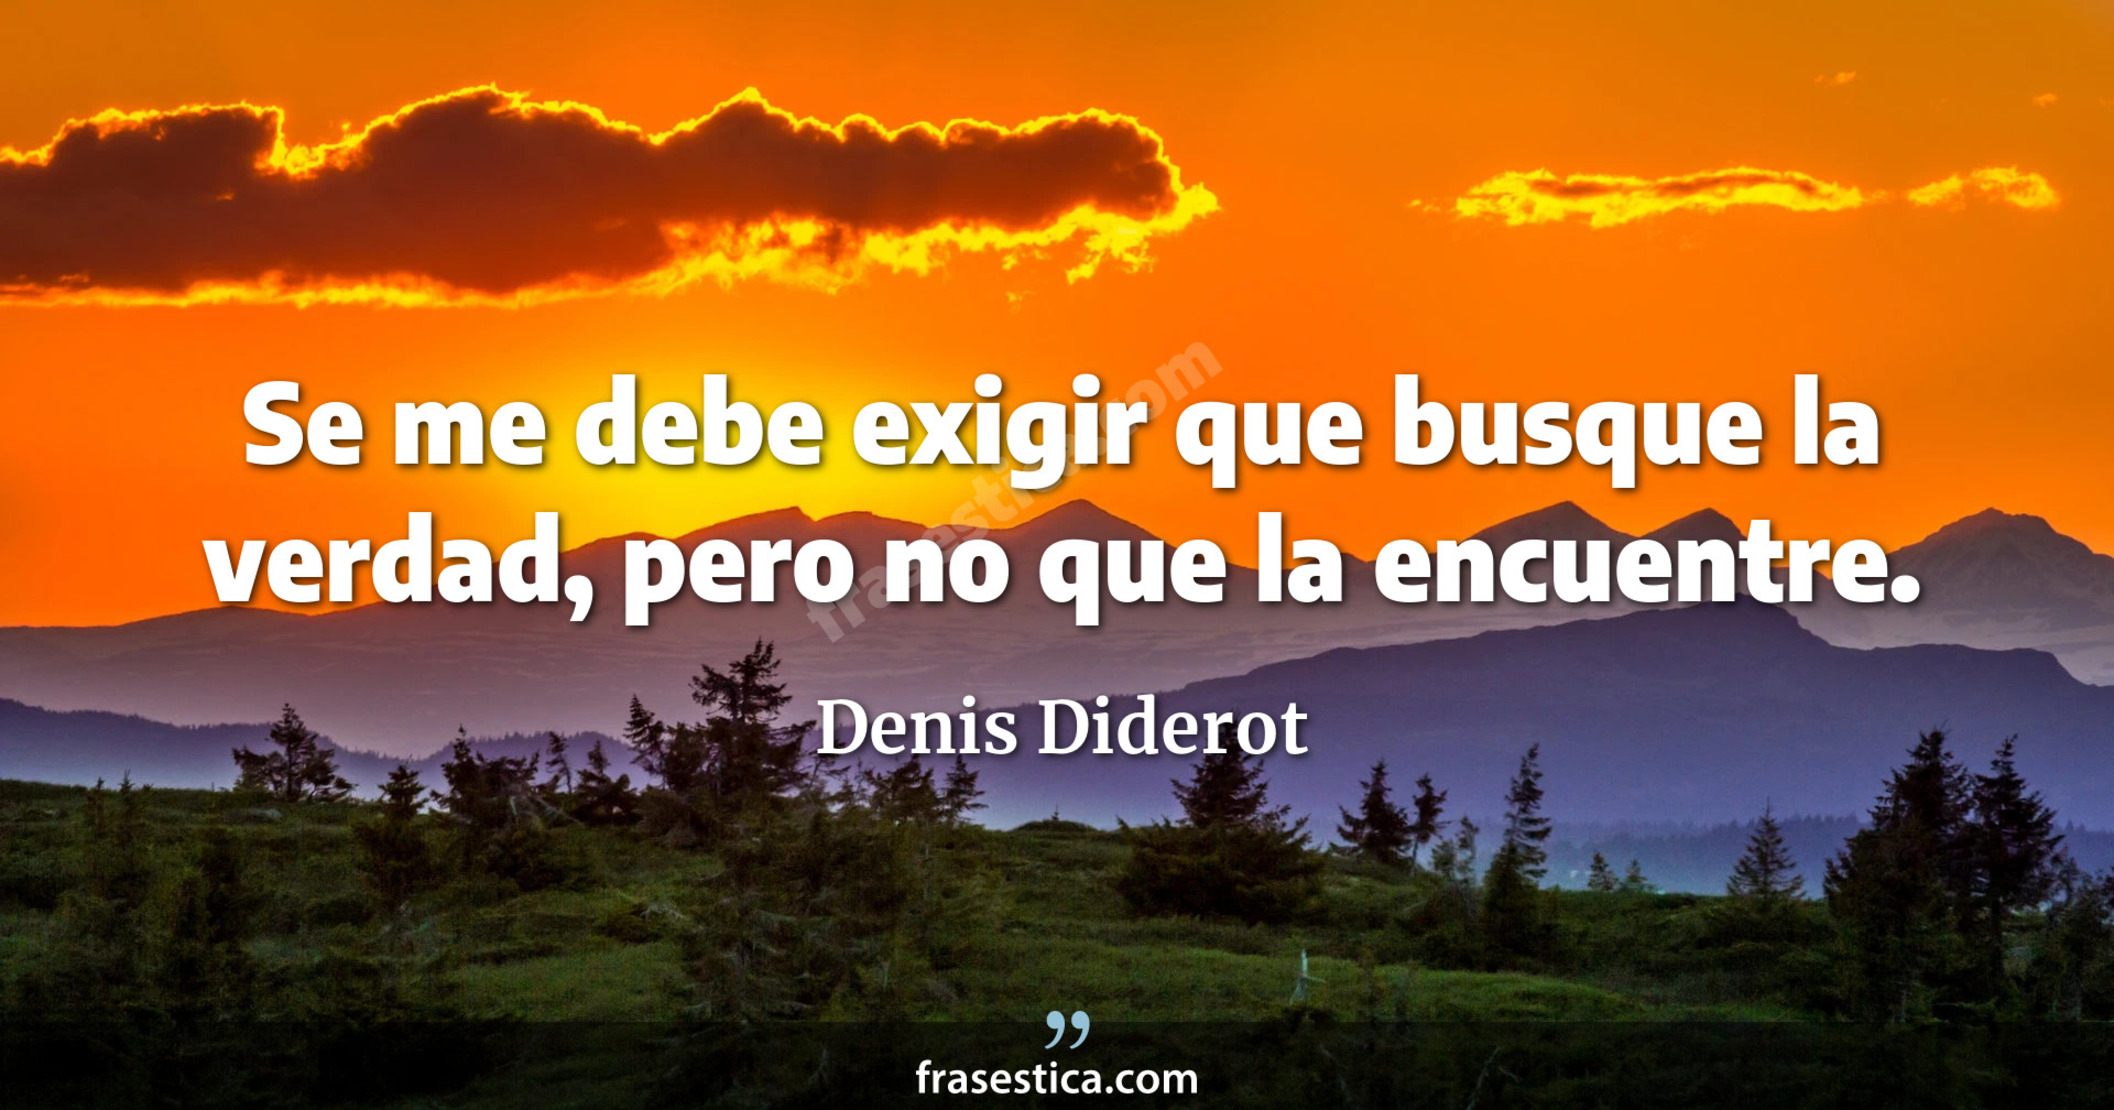 Se me debe exigir que busque la verdad, pero no que la encuentre. - Denis Diderot